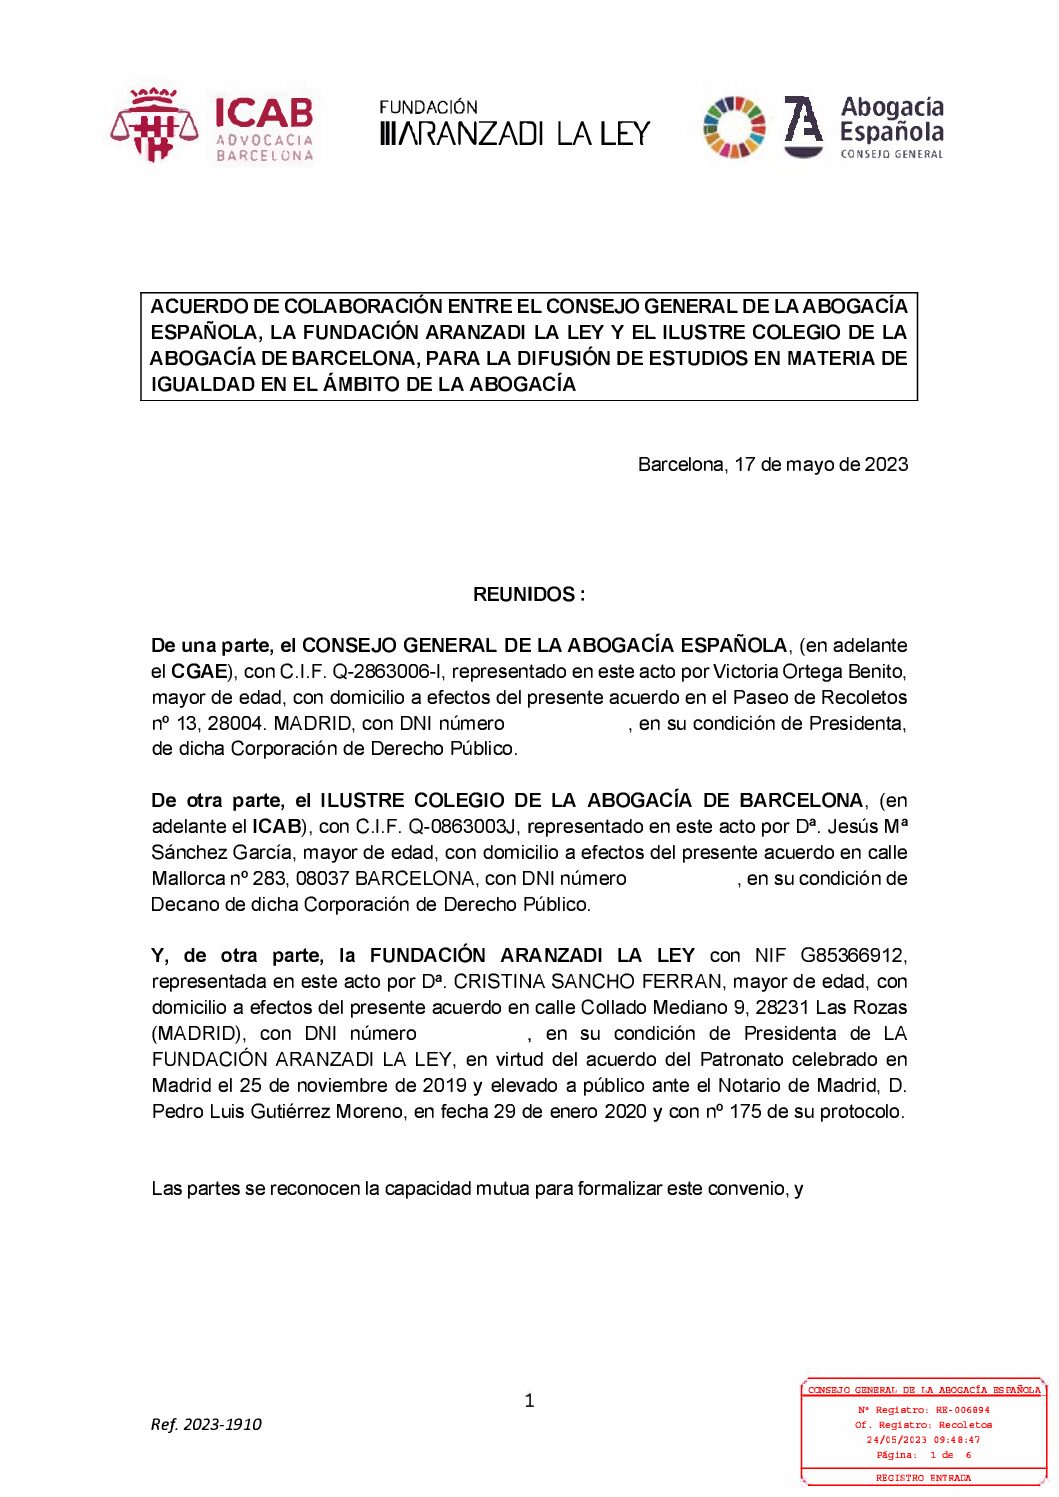 FUNDACIÓN ARANZADI LA LEY – ILUSTRE COLEGIO DE LA ABOGACÍA DE BARCELONA_RE_006894_23